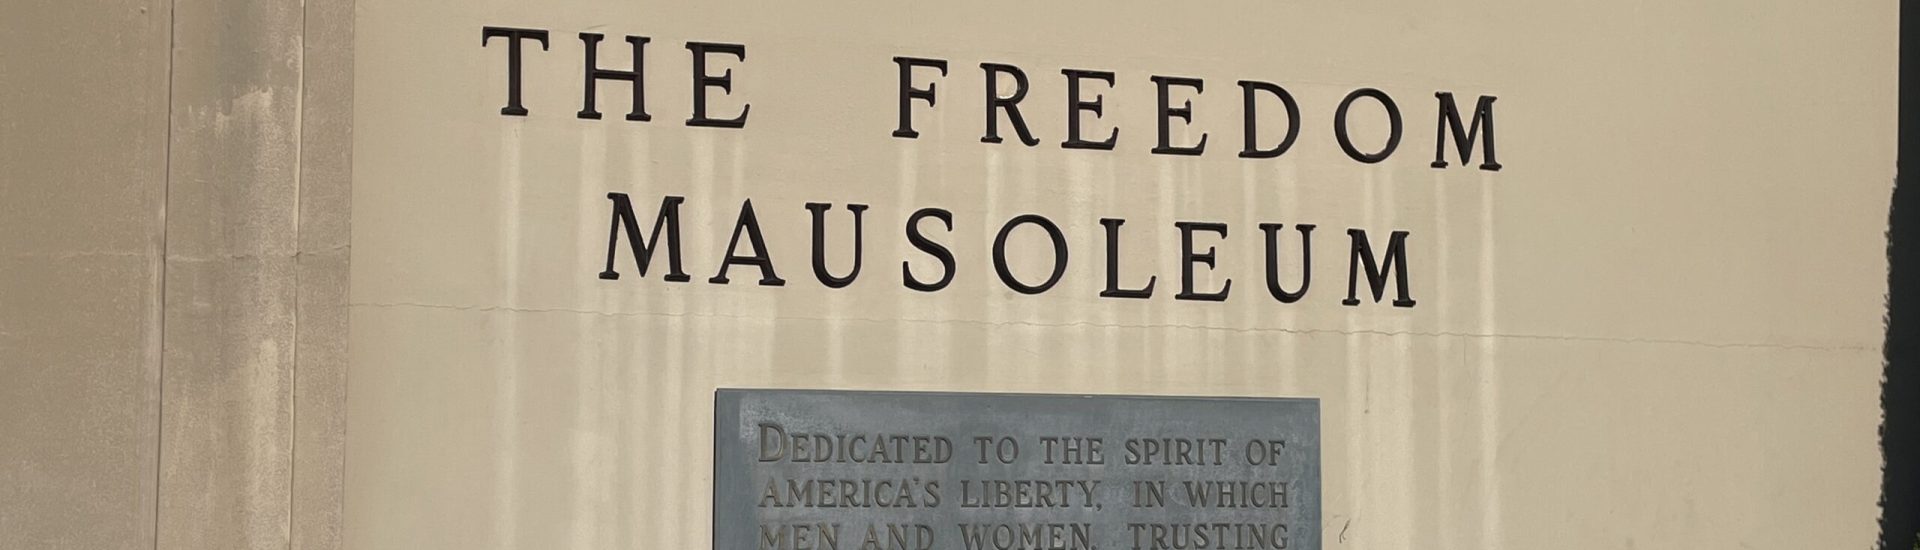 Freedom Mausoleum